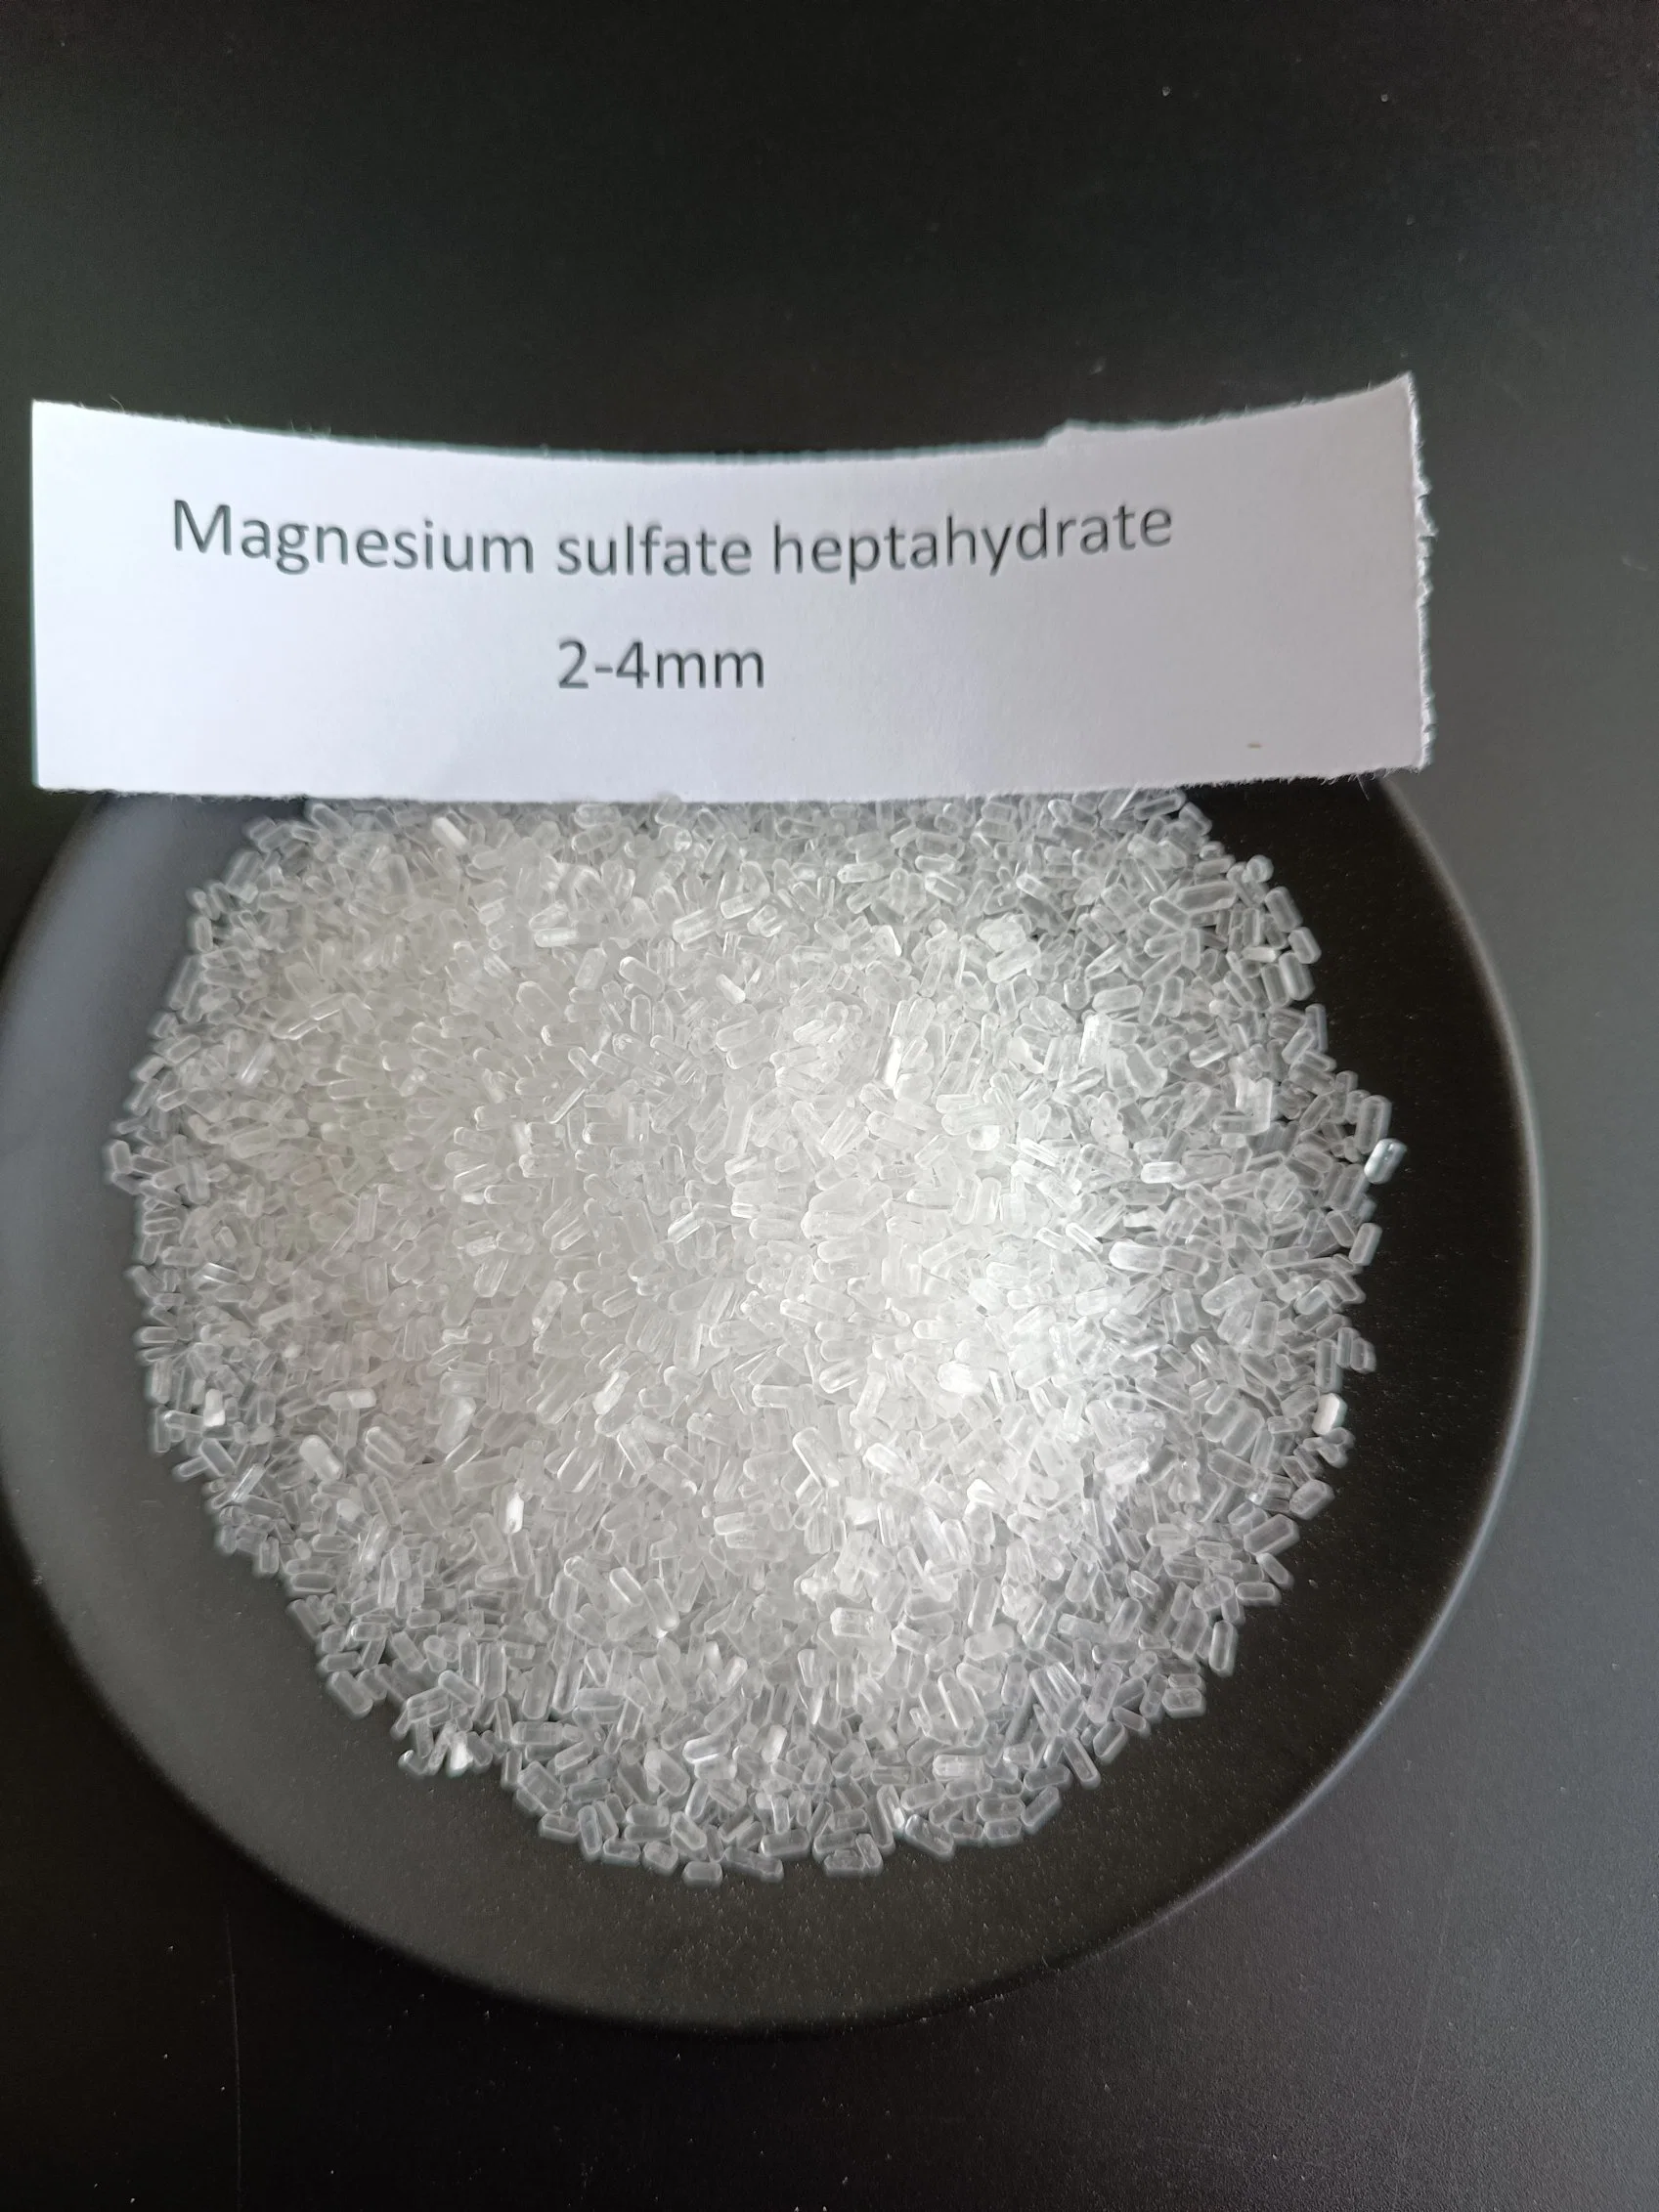 سبتاهيدرات كبريتات الماغنسيوم ملح إبسوم 99.5% درجة زراعية صناعية